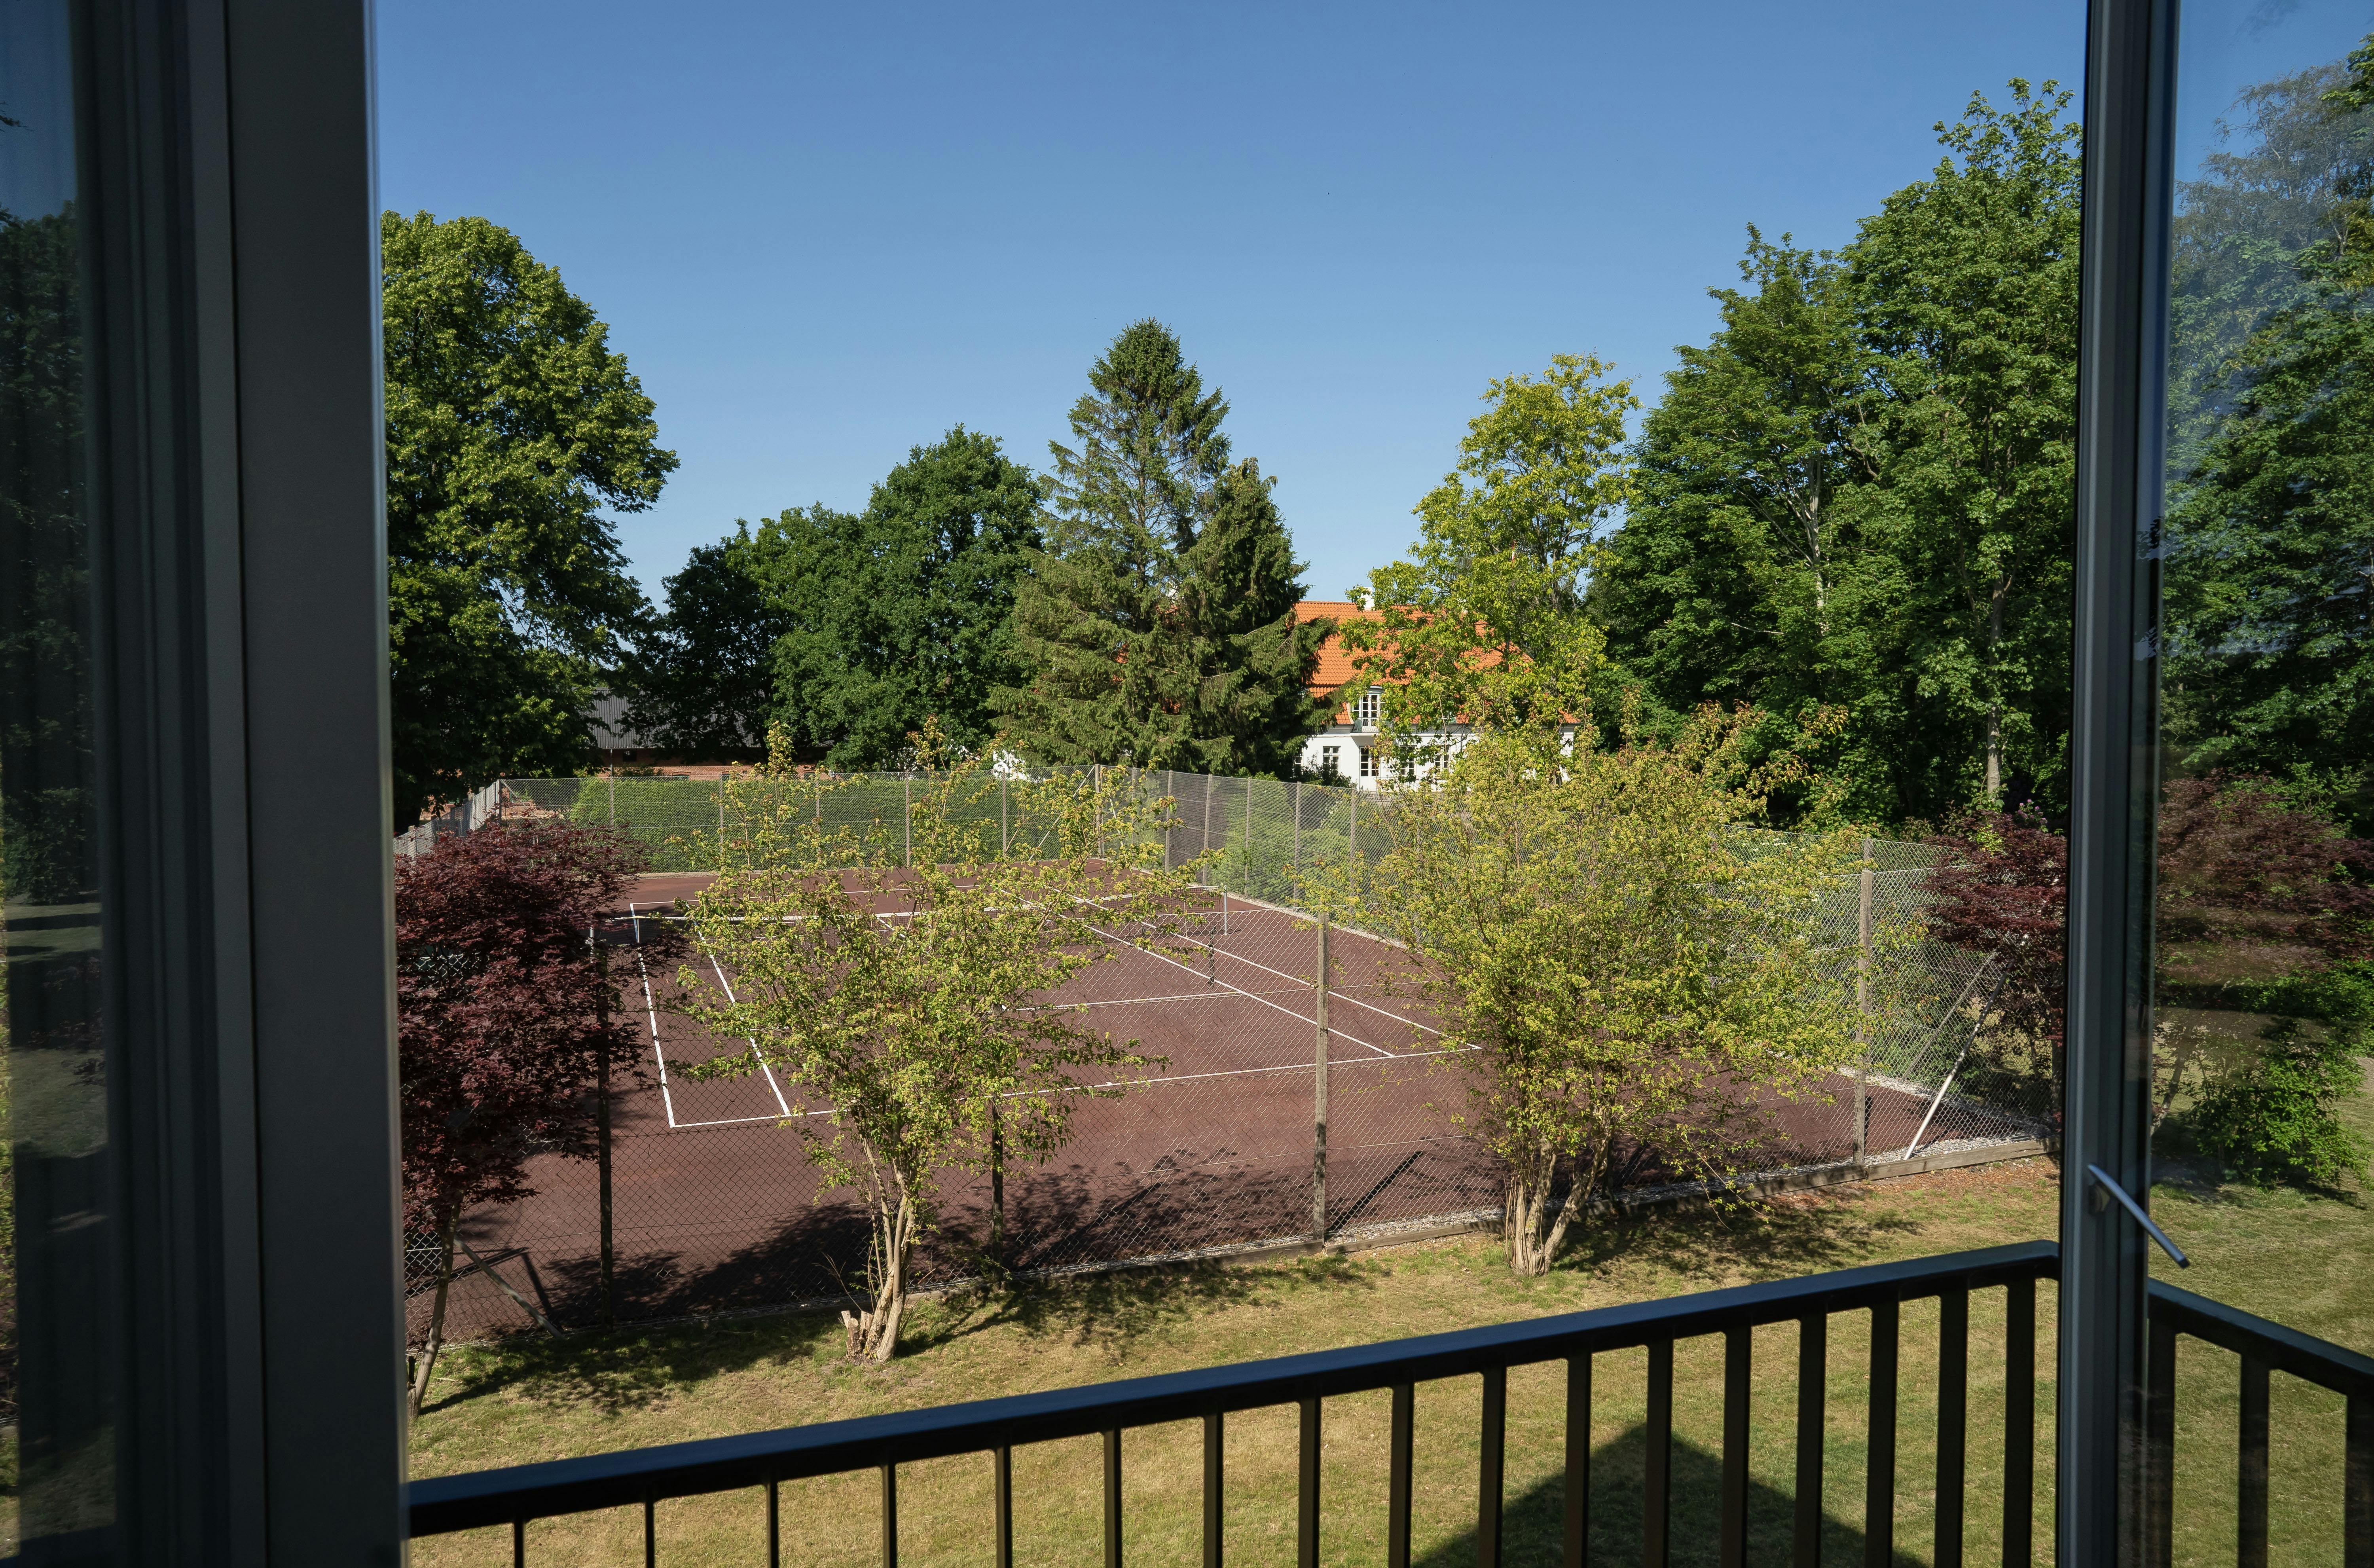 Fra den ene altan kan man se tennisbanen, som grevinde Sussie gerne benytter. I baggrunden kan Egeland Gods, greveparrets tidligere hjem, ses.&nbsp;
